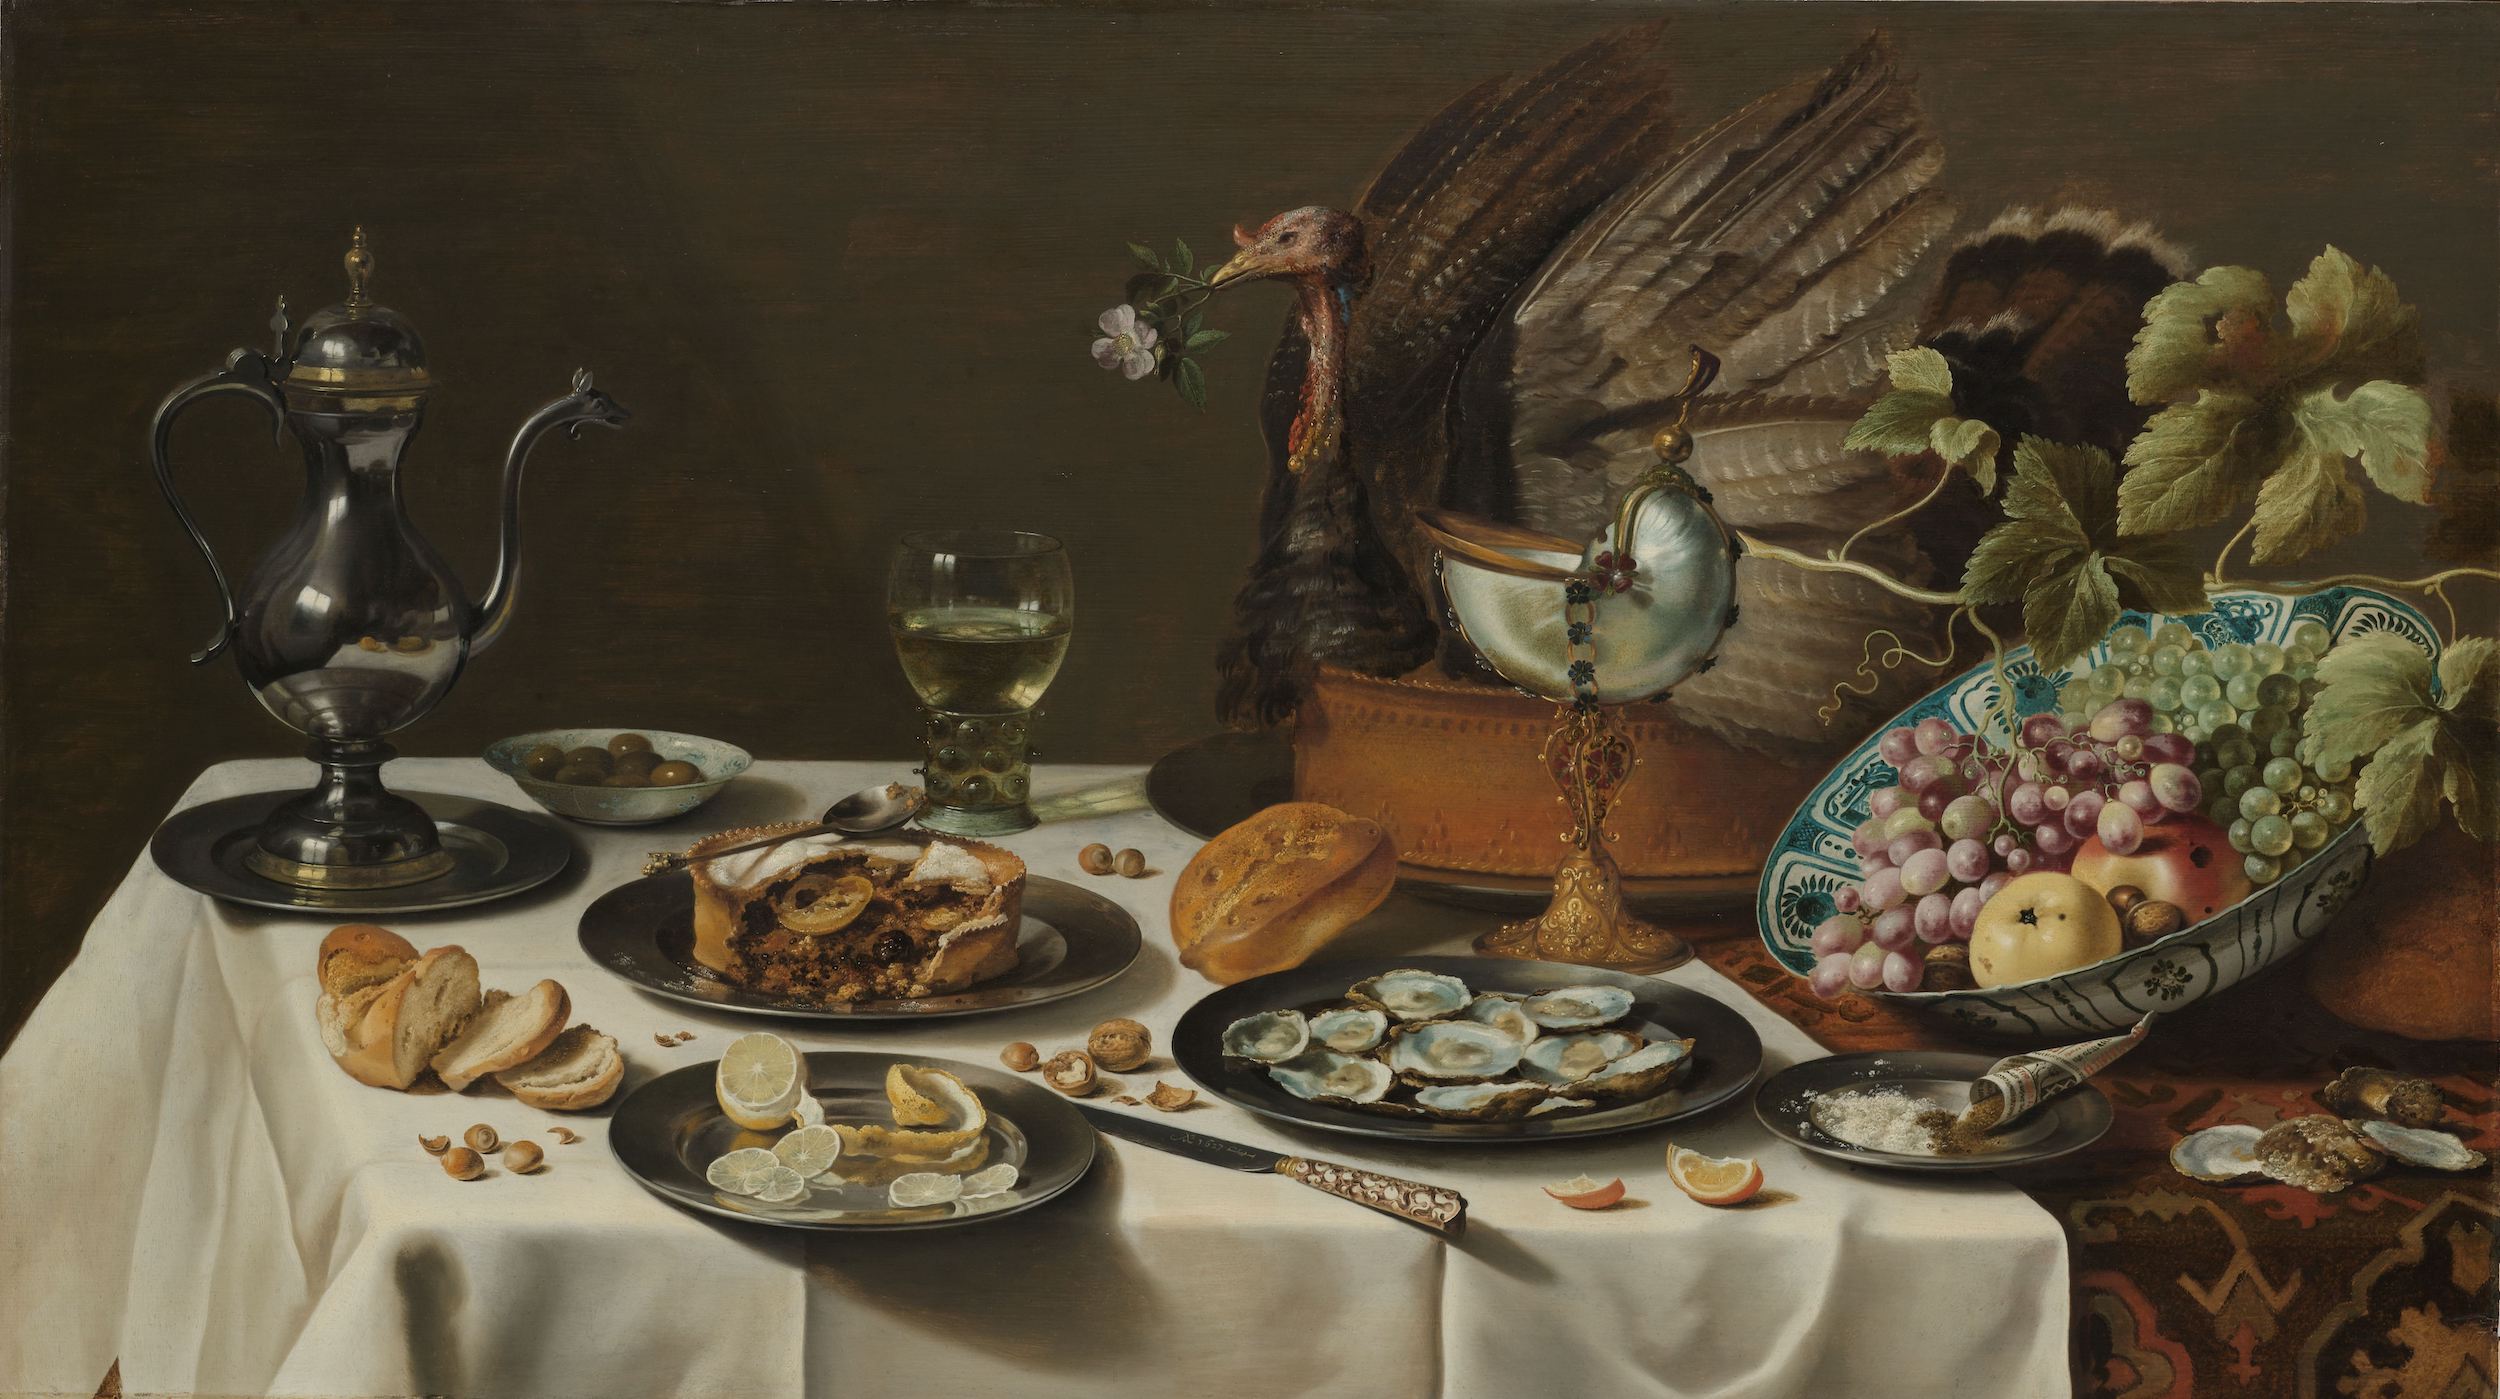 Still Life with a Turkey Pie by Pieter Claesz - 1627 - 76.5 x 135 cm Rijksmuseum